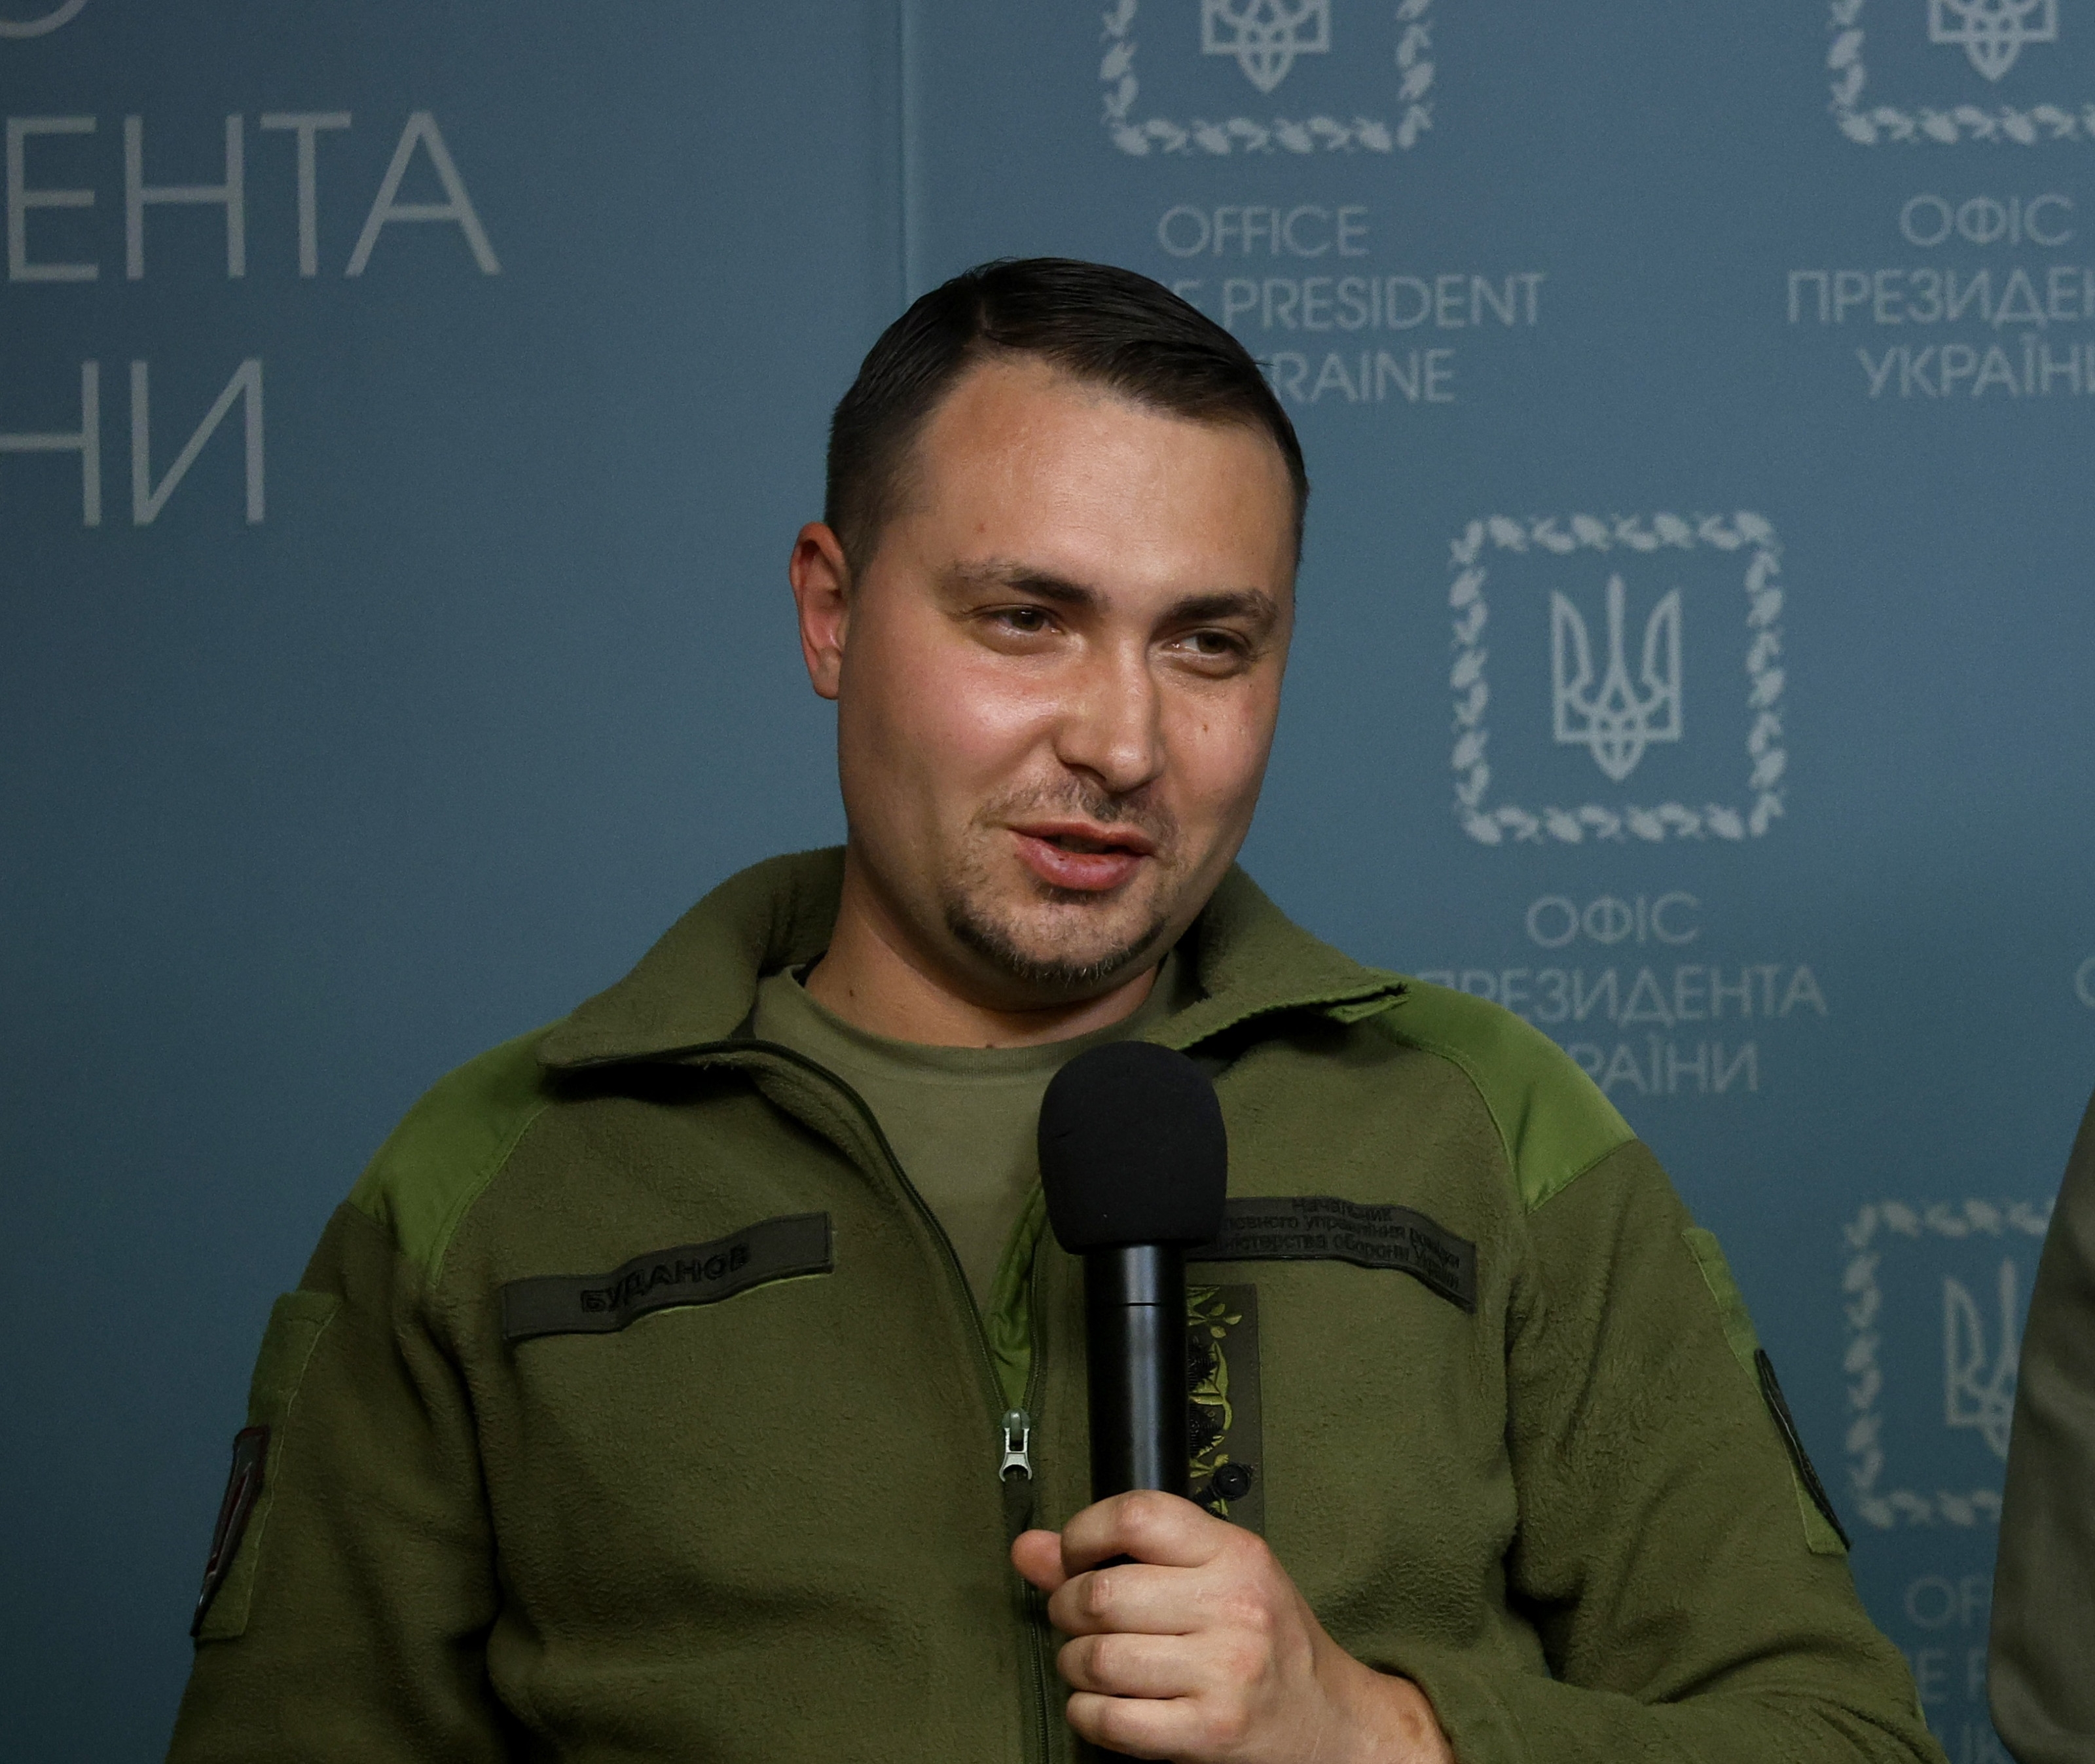 Глава сбу буданов. Руководитель ГУР МО Украины Буданов.